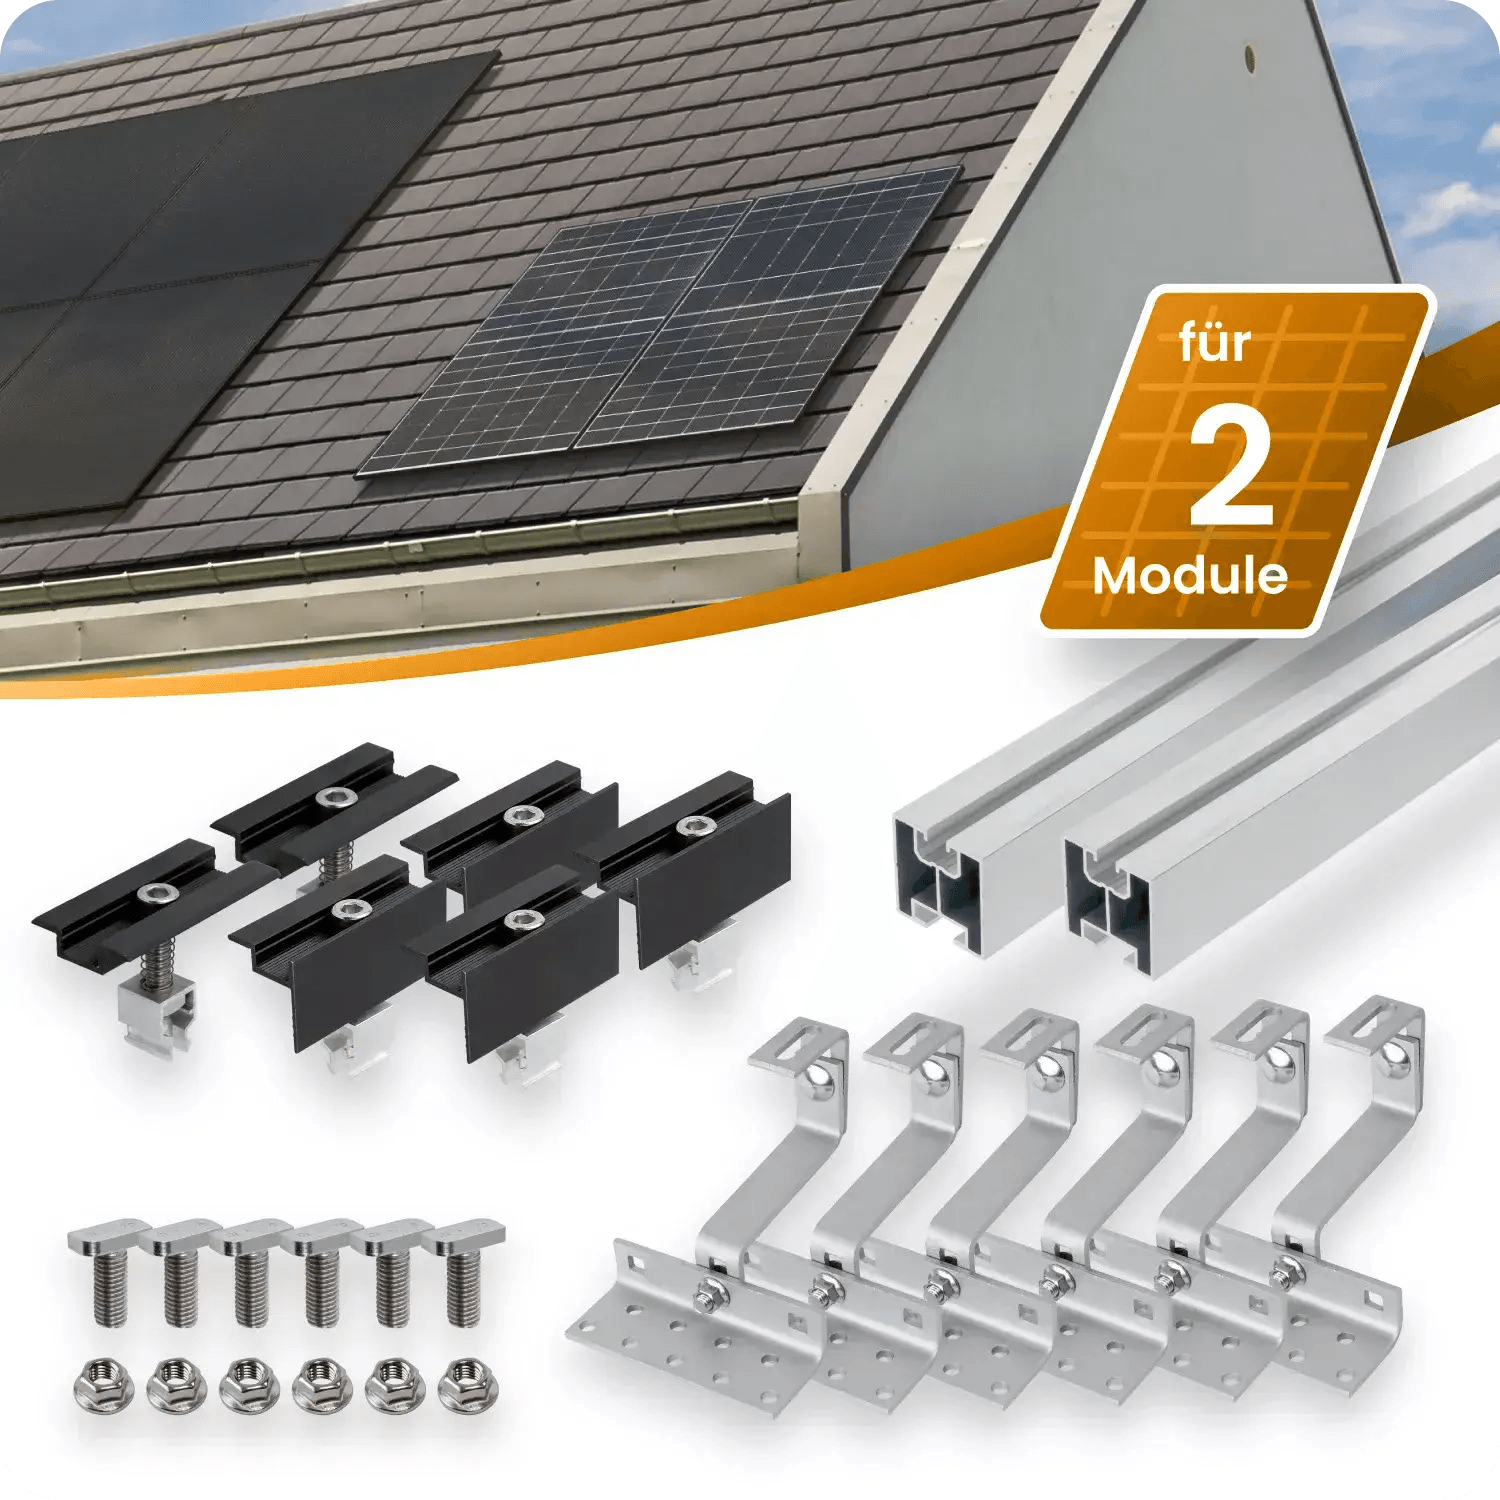 Zendure SolarFlow Balcony 800W Solar System with Battery Storage – Zendure  EU